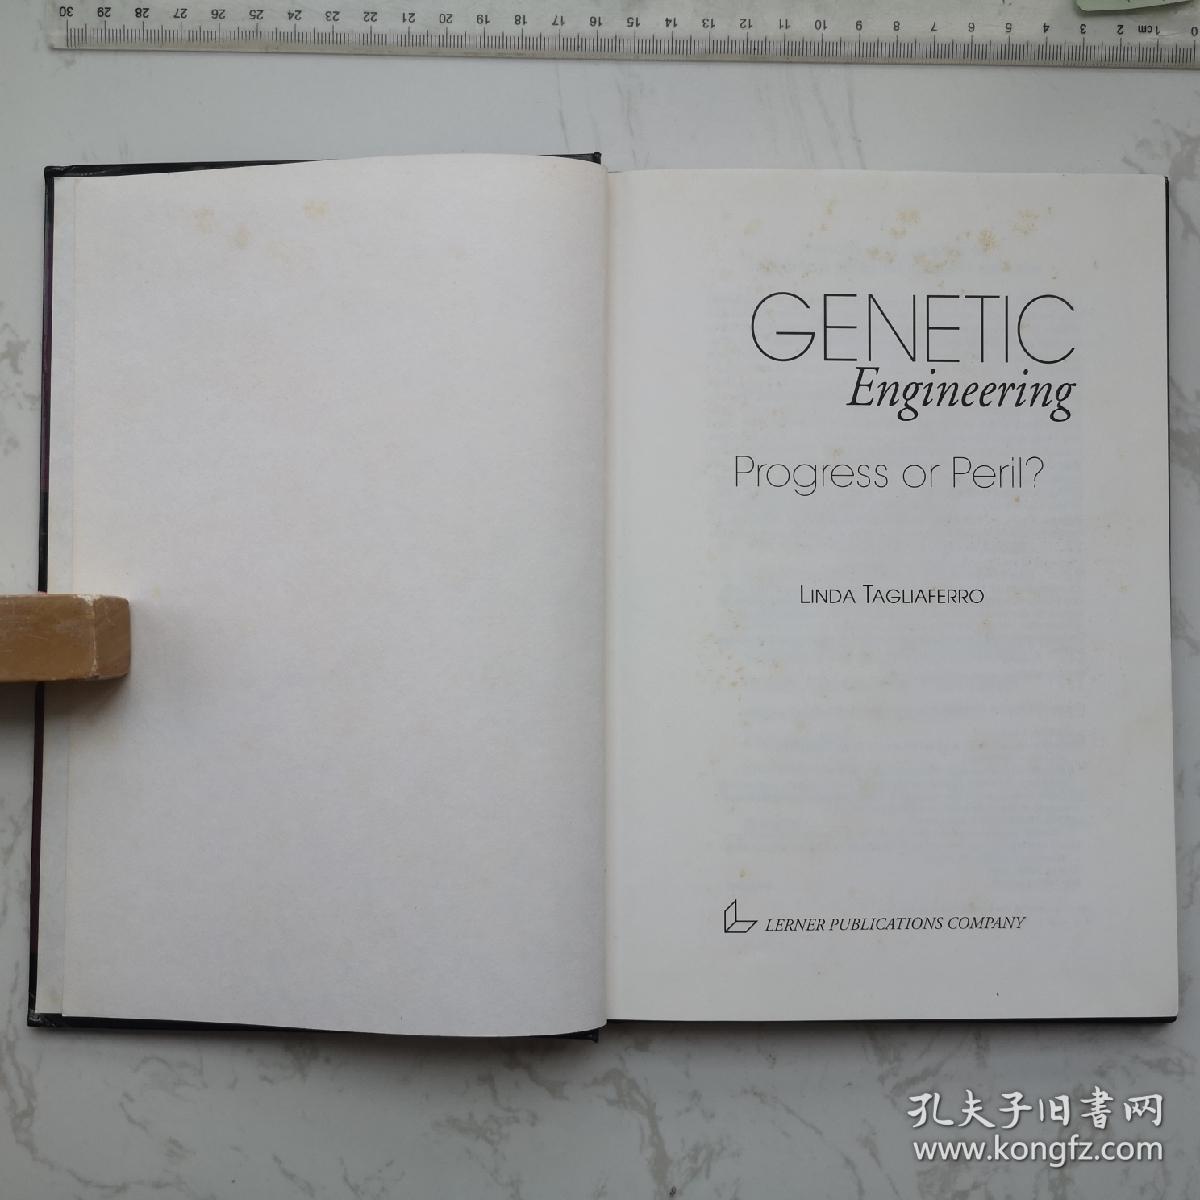 Genetic Engineering 精装